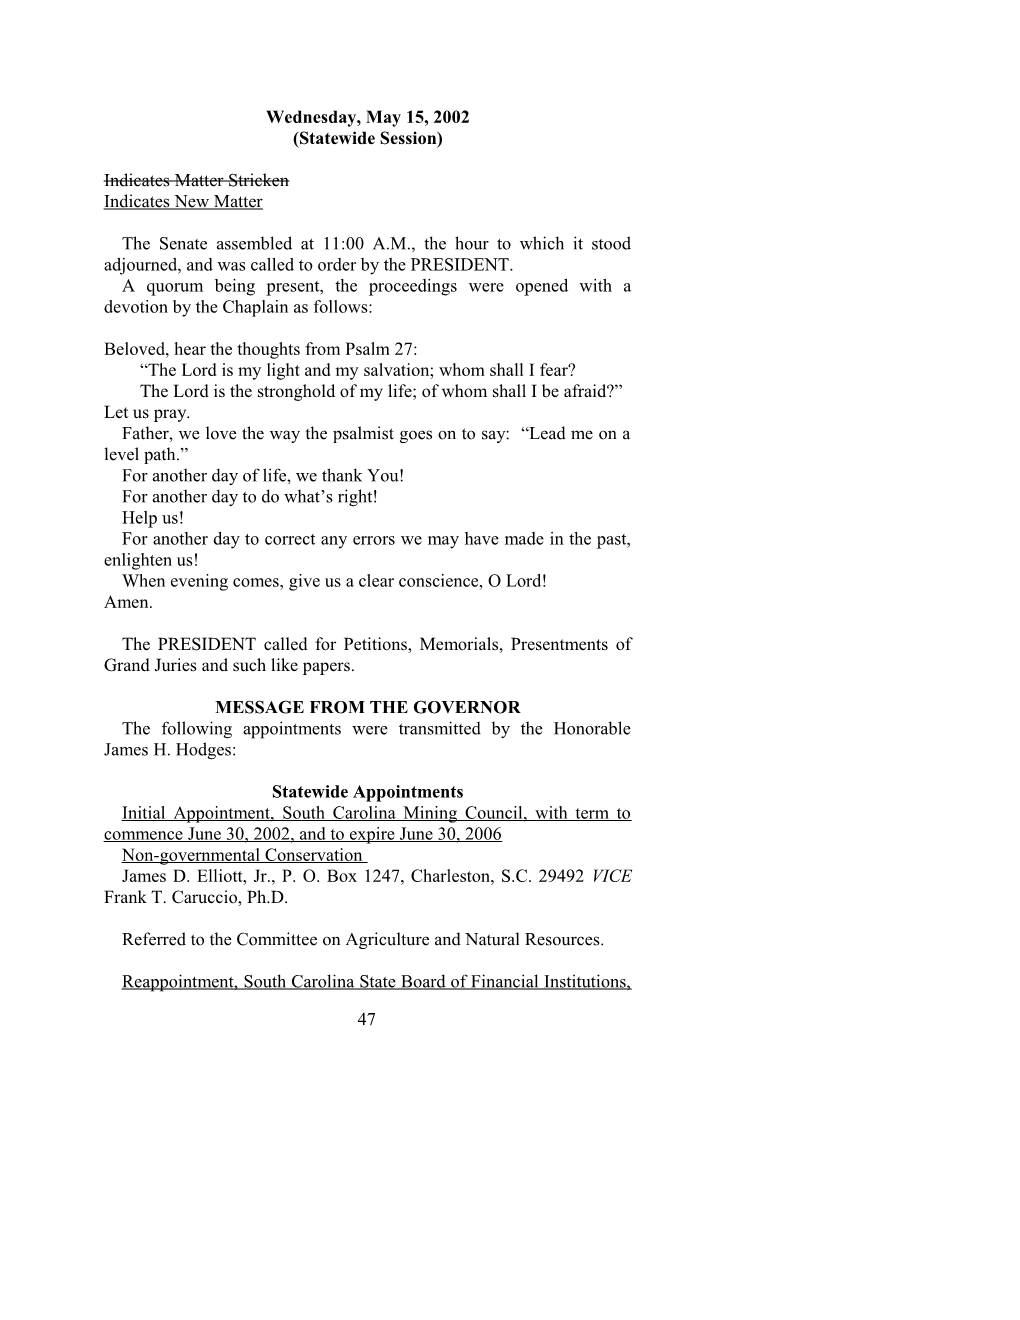 Senate Journal for May 15, 2002 - South Carolina Legislature Online